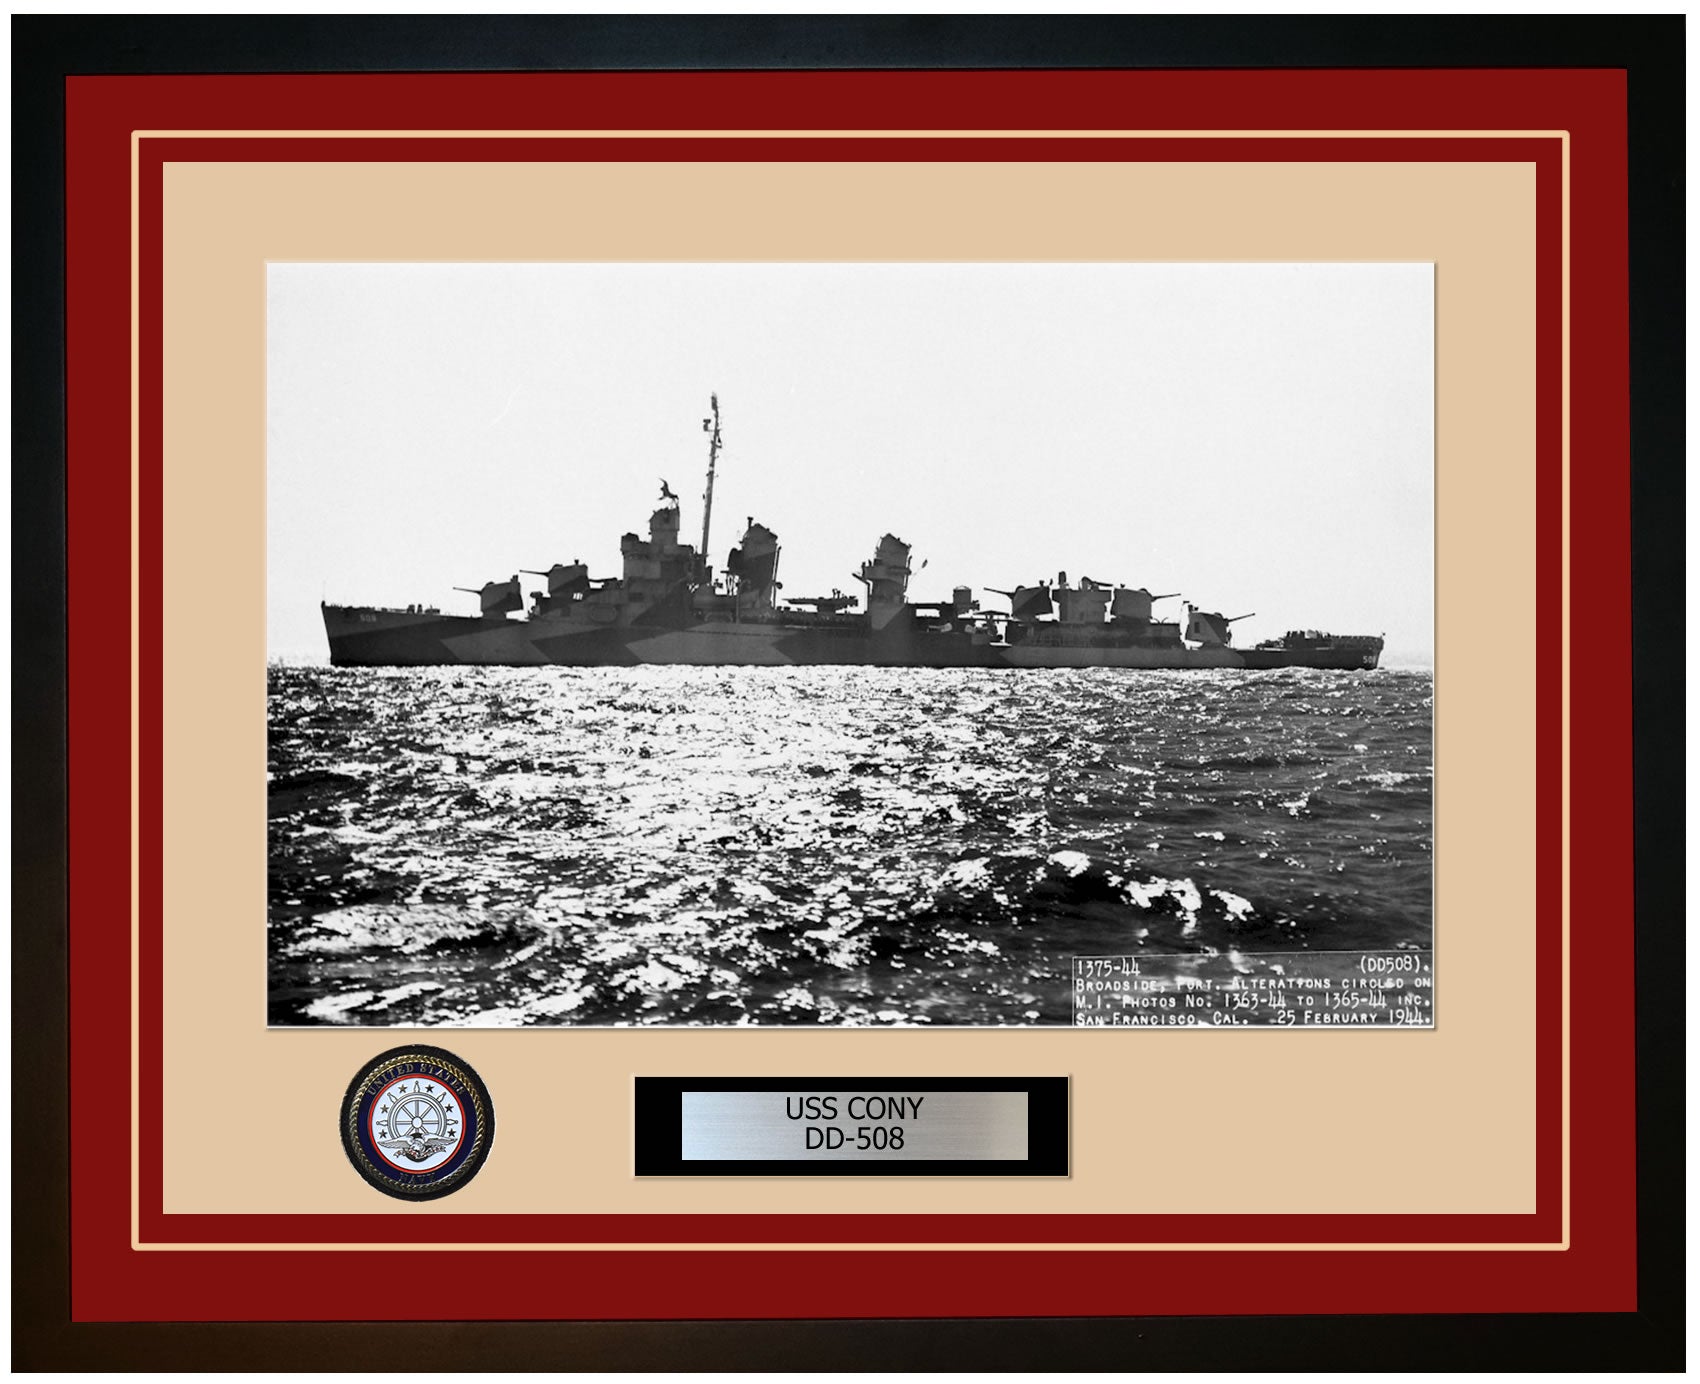 USS CONY DD-508 Framed Navy Ship Photo Burgundy